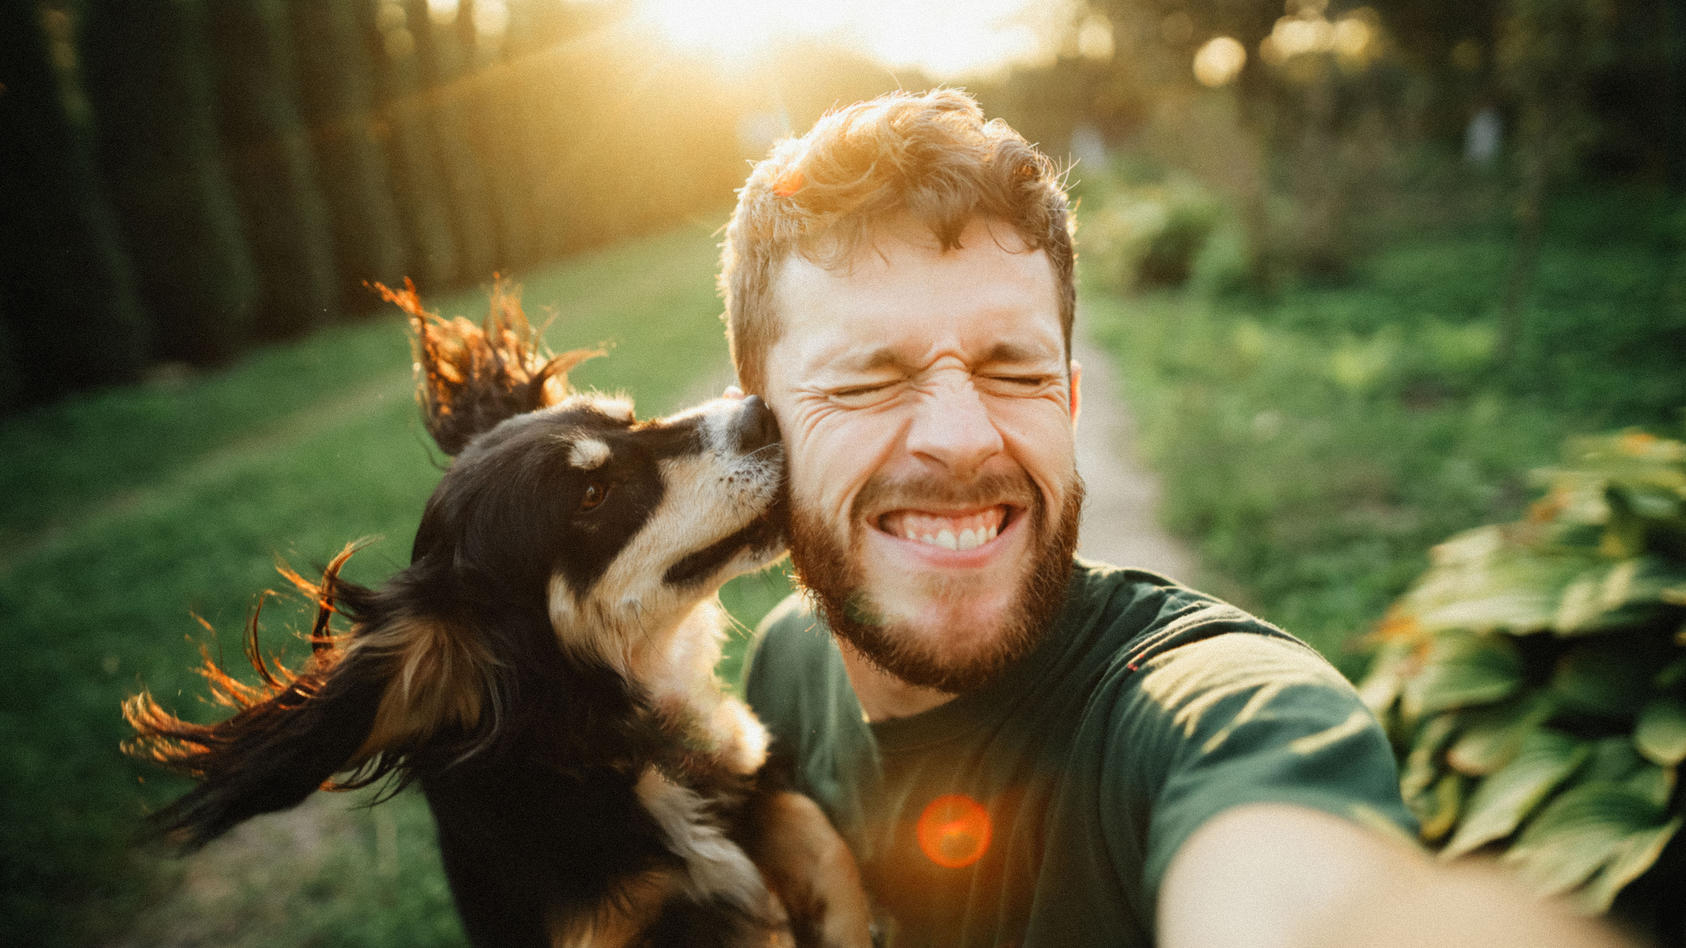 Mann mit Hund auf dem Arm macht ein Selfie.